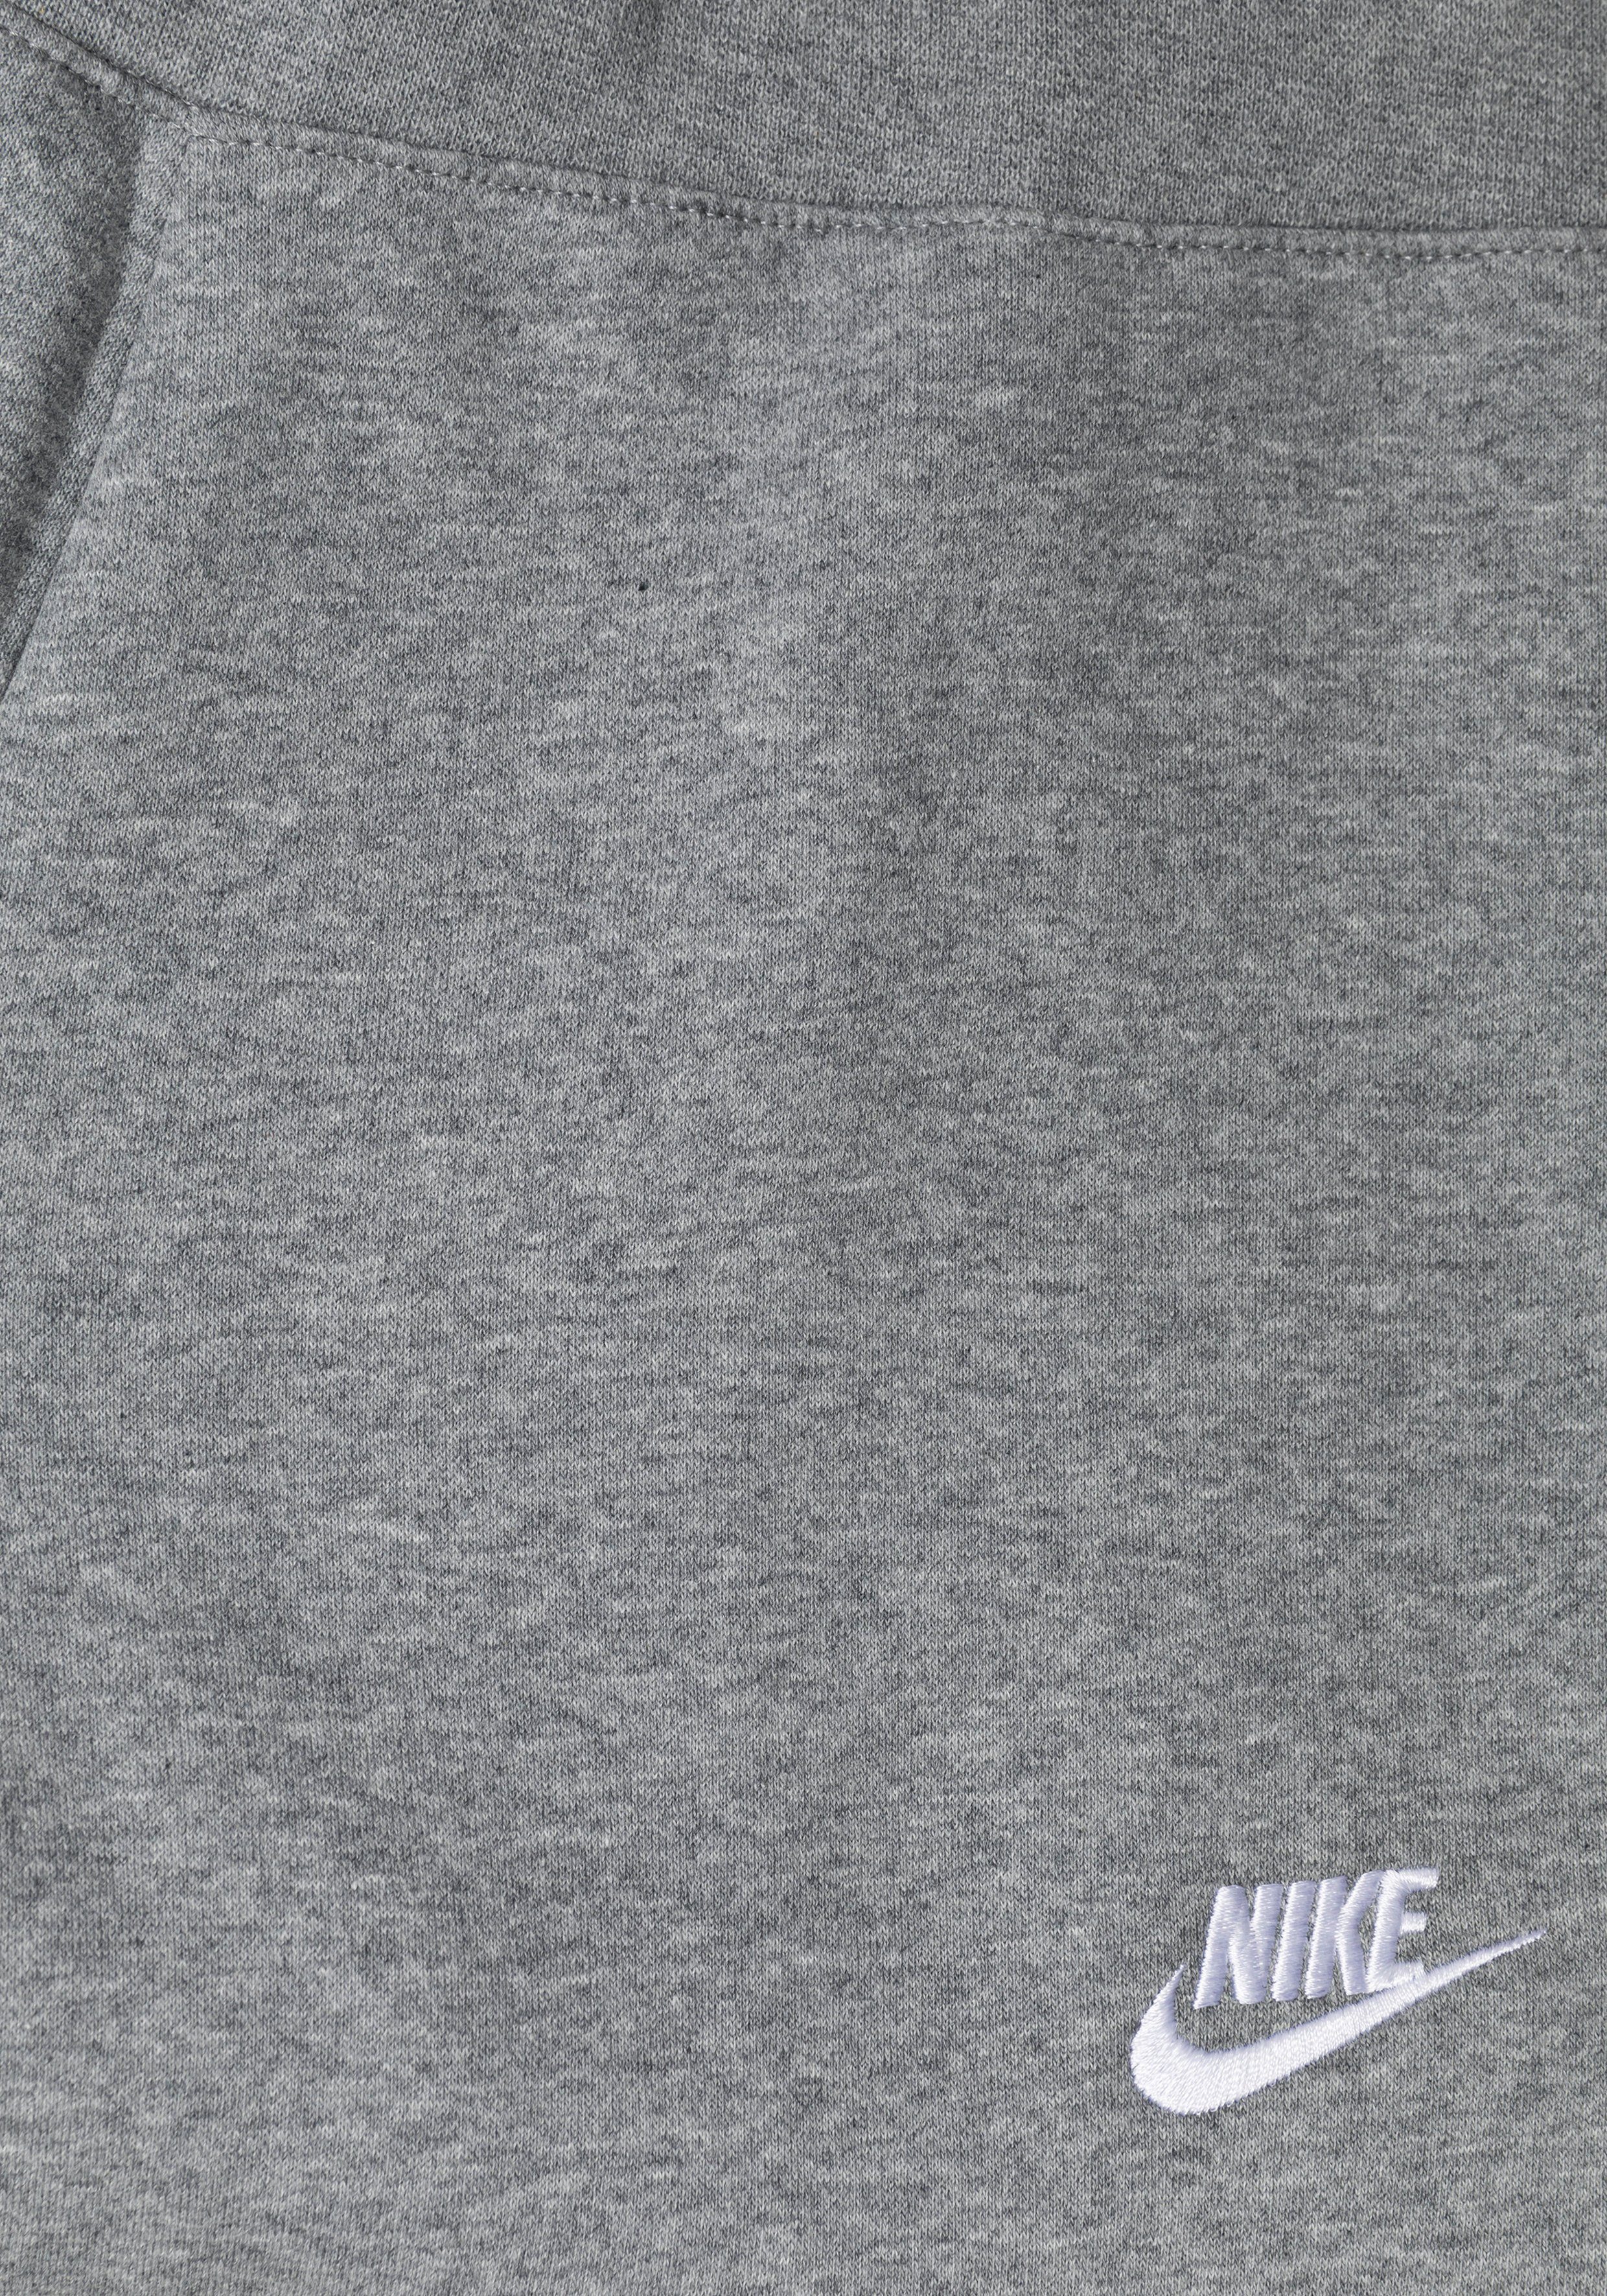 Fleece Pants (Girls) grau-meliert Nike Big Club Kids' Jogginghose Sportswear